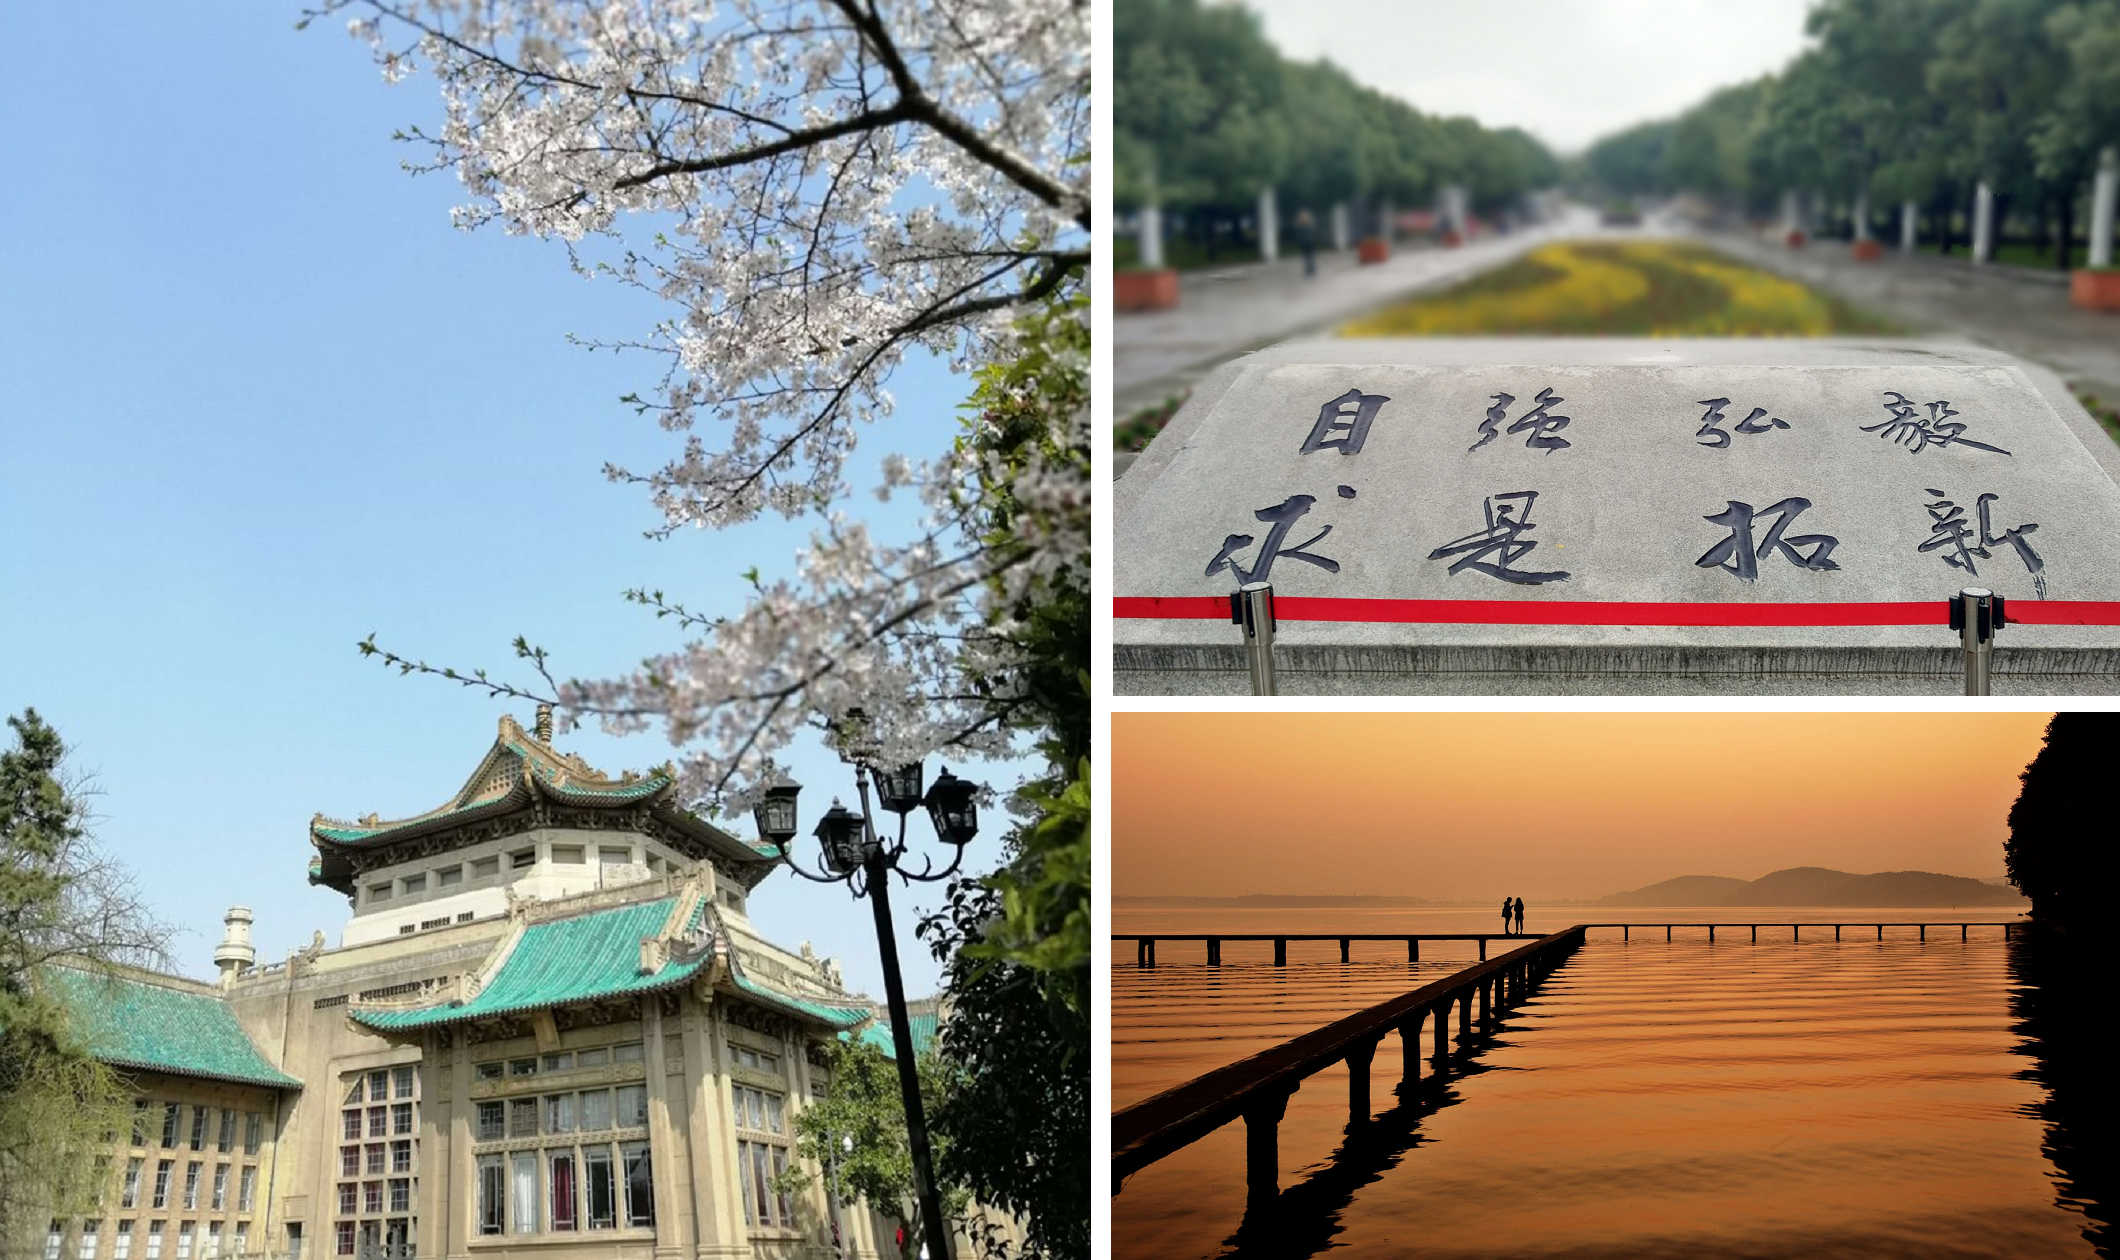 左：武漢大學早期建築中的圖書館。右上：武漢大學校訓。右下：武漢大學東湖的凌波門。